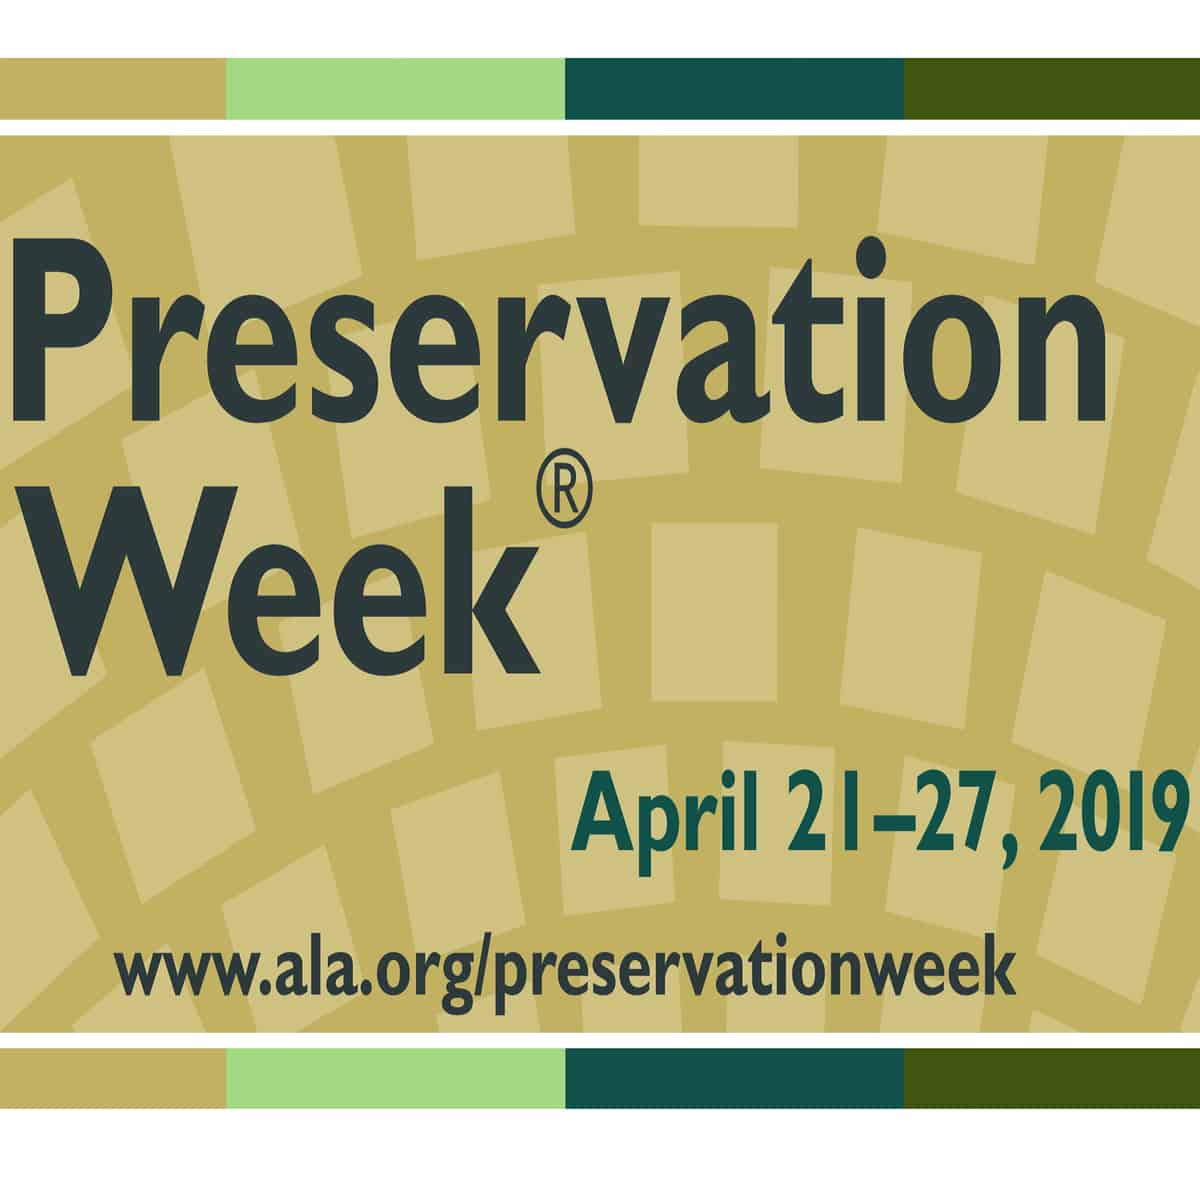 Preservation Week April 21-27, 2019